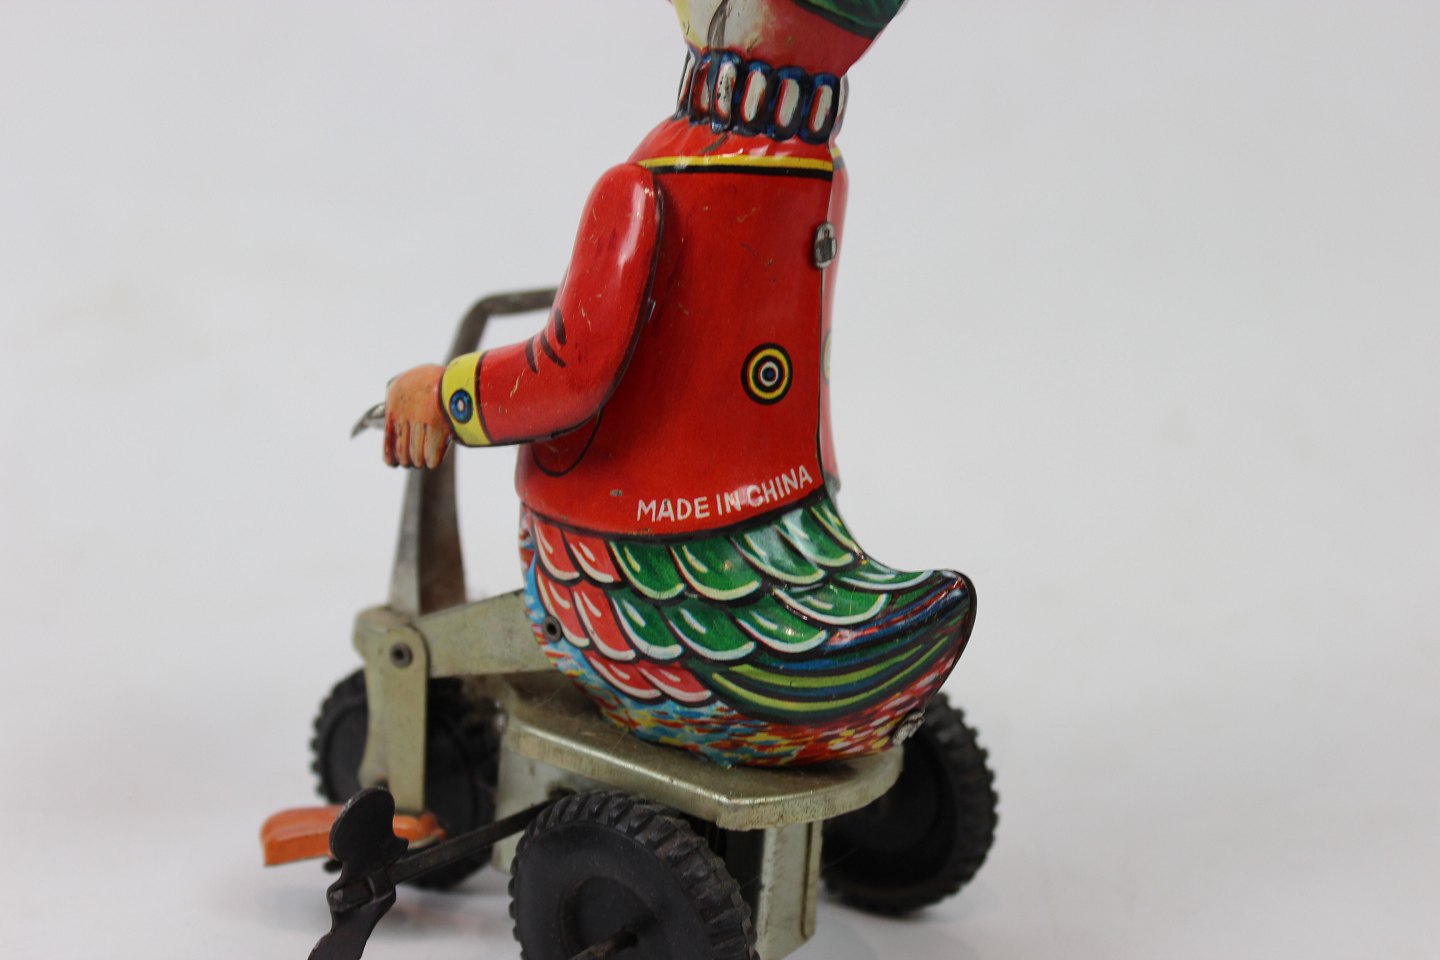 Legetøj i metal og farver lavet Kina fra 1920erne. * 5000m2 udstilling. - Osted Antik & Design